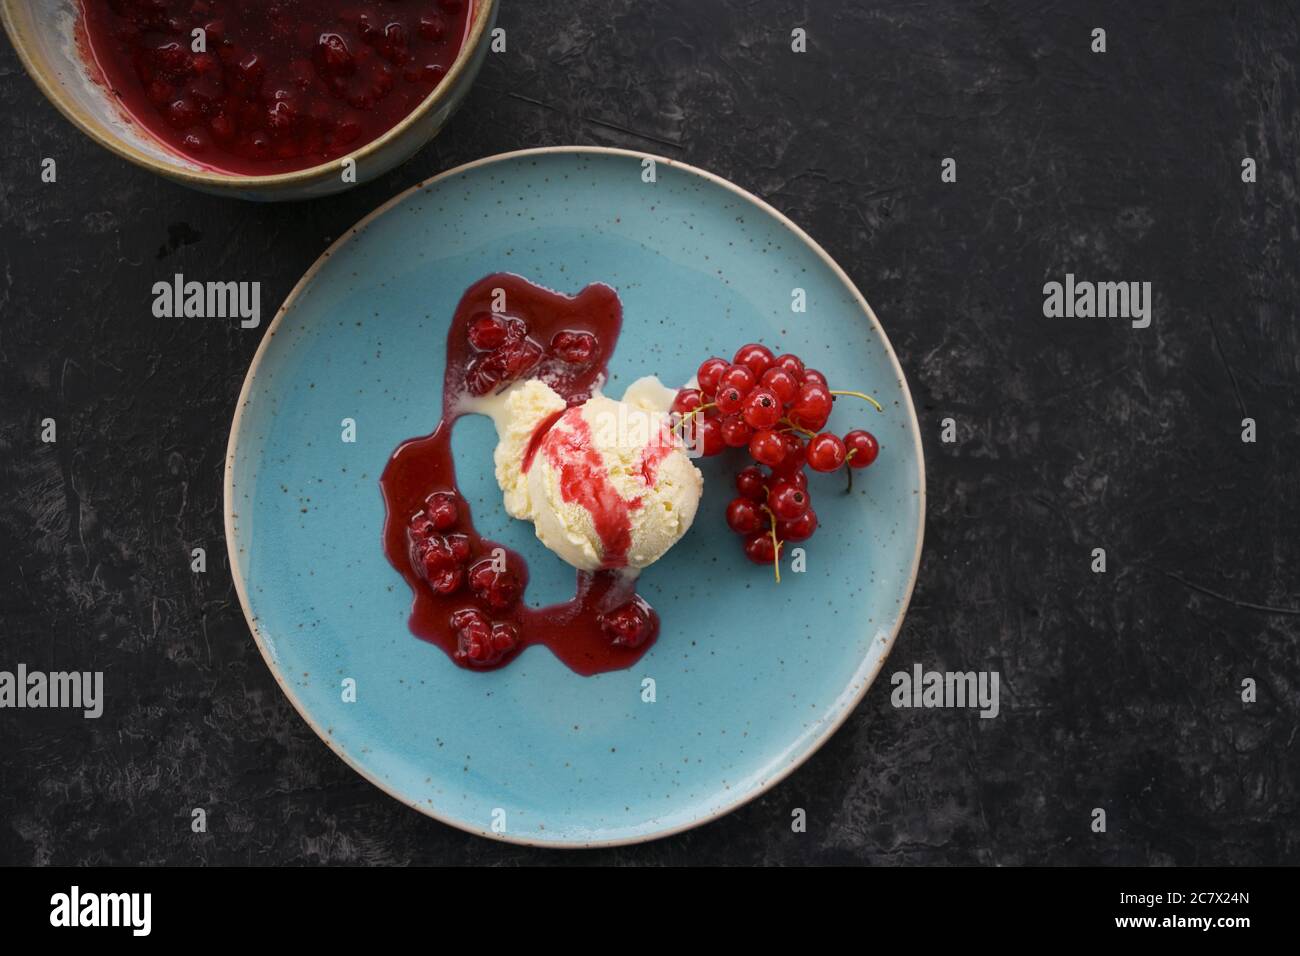 Glace à la vanille avec cassis rouge et sauce à la gelée de fruits sur une assiette bleue, fond sombre avec espace de copie, vue en grand angle depuis le dessus, mise au point sélectionnée Banque D'Images